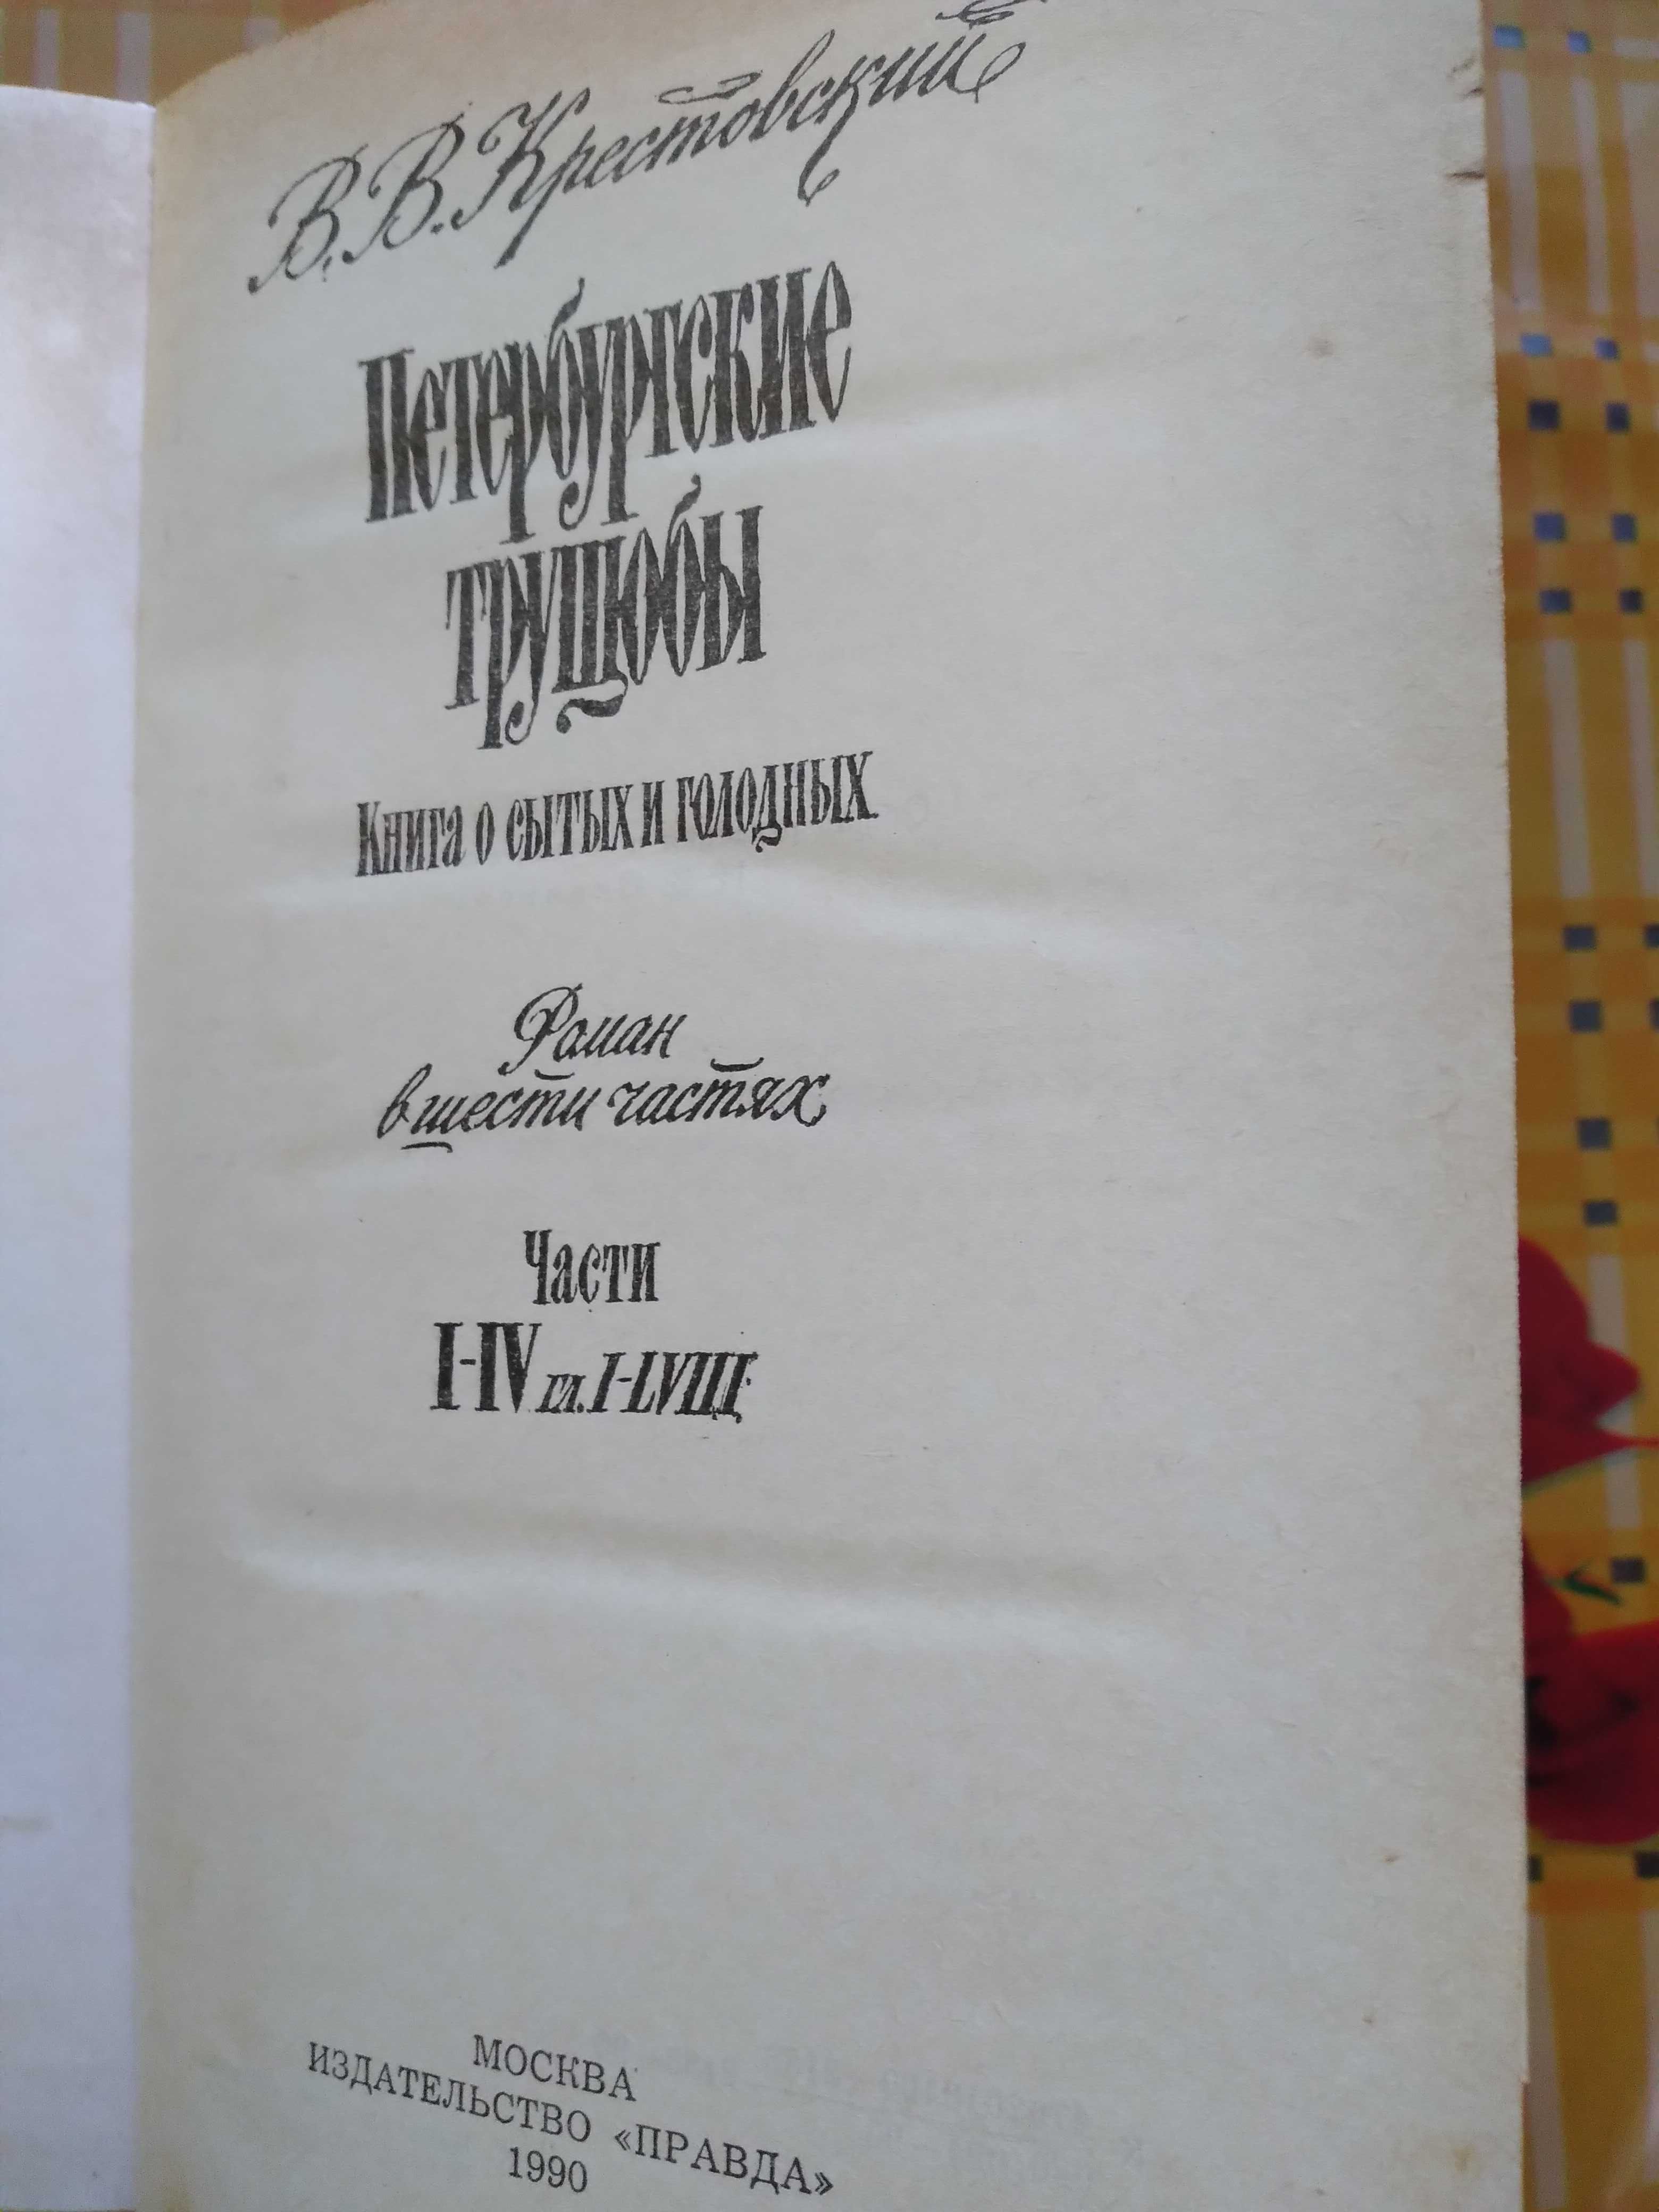 В.В.Крестовский "Петербургские трущобы", 2-а тома.